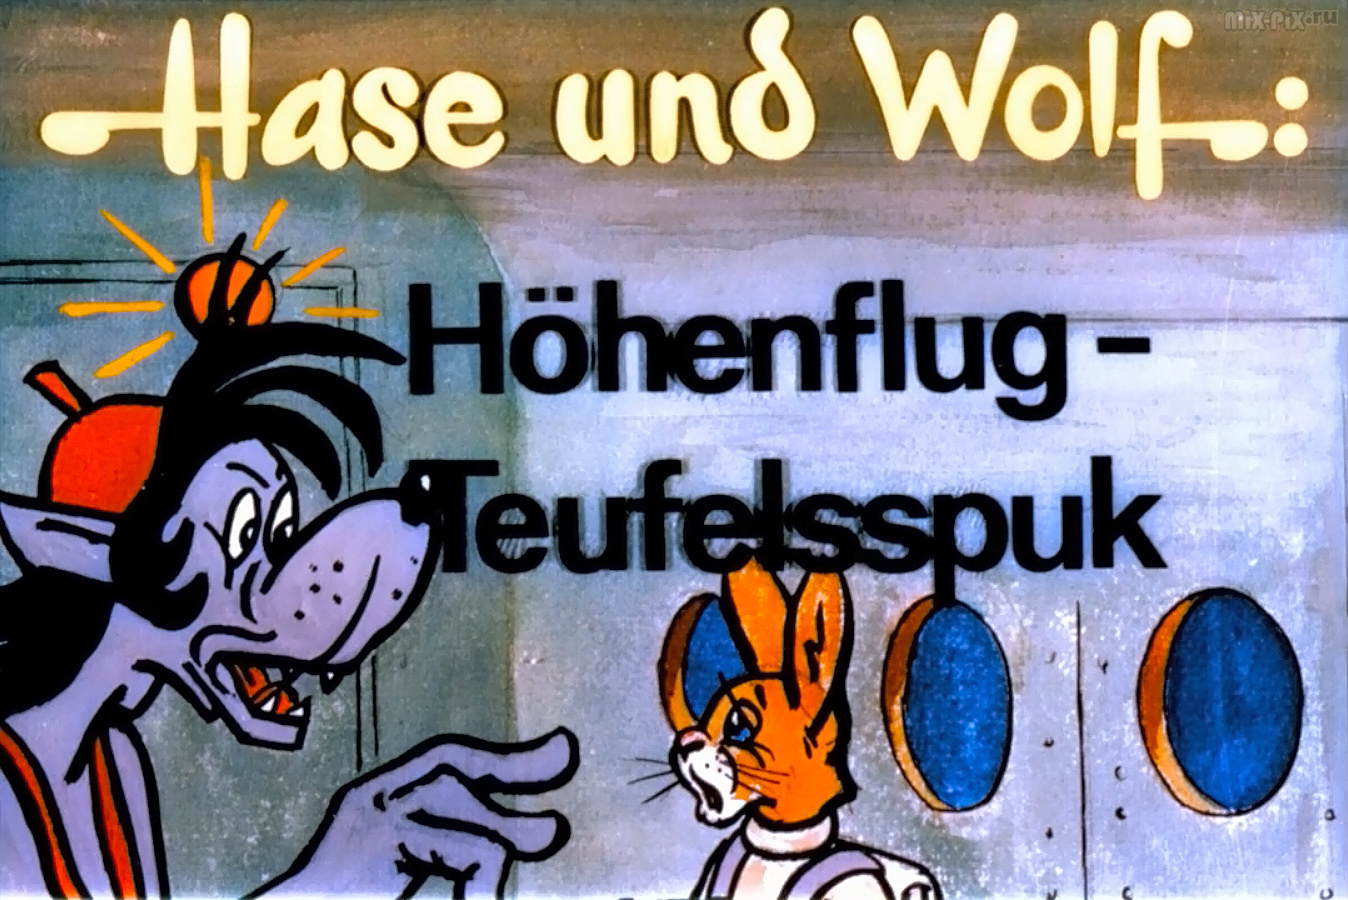 003_Hase-und-Wolf---Hohenflug---Teufelsspuk.jpg